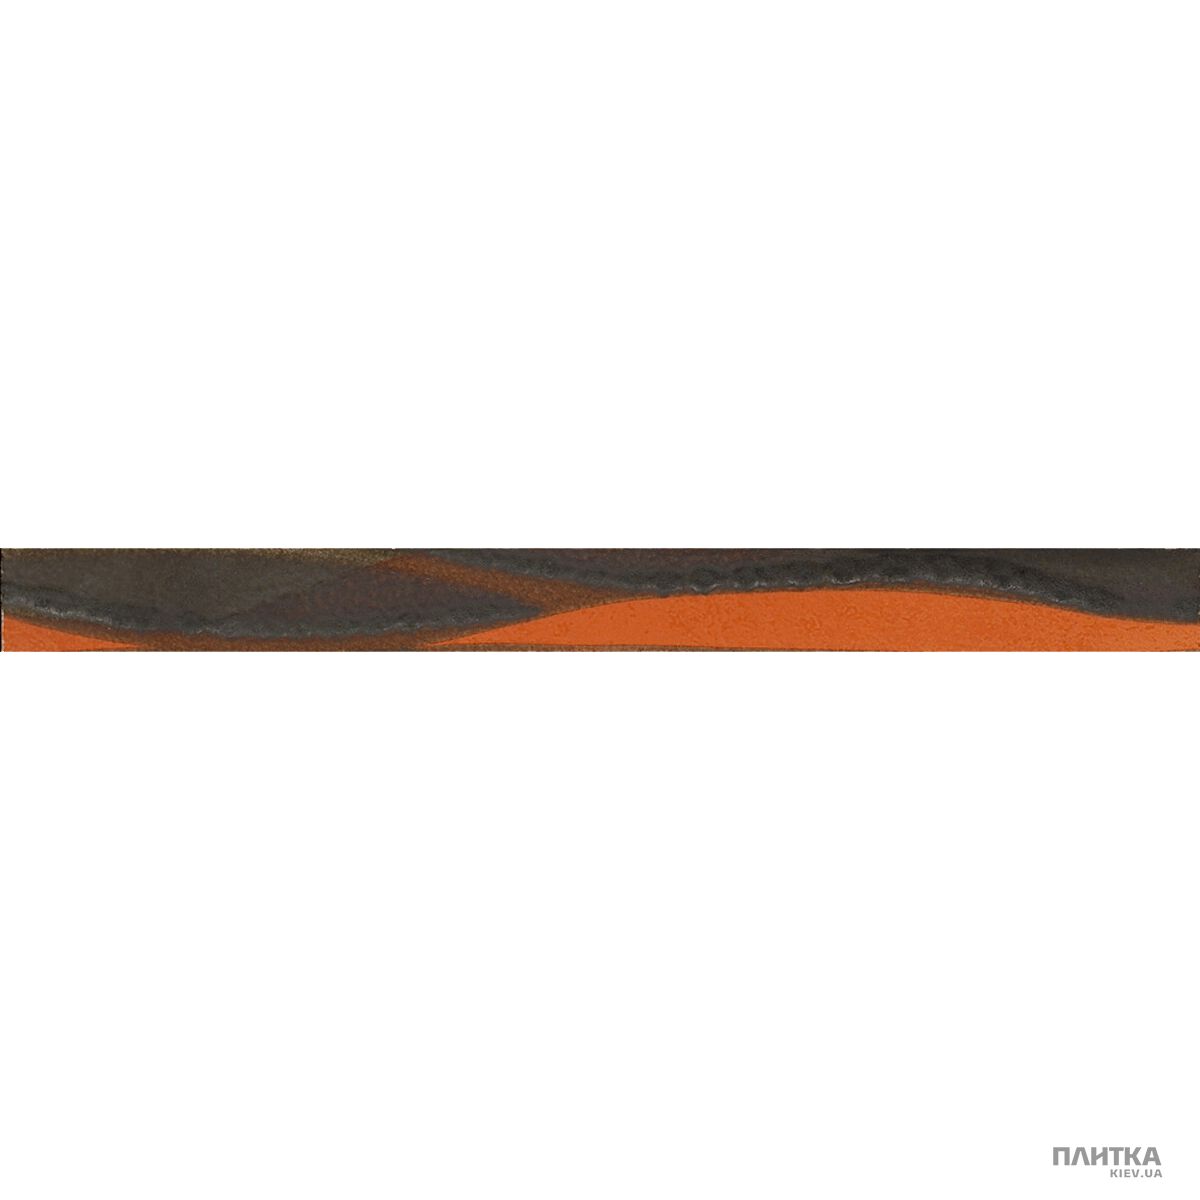 Плитка Imola Nuvole L.VENTO O MIX фриз -Z коричневый,оранжевый